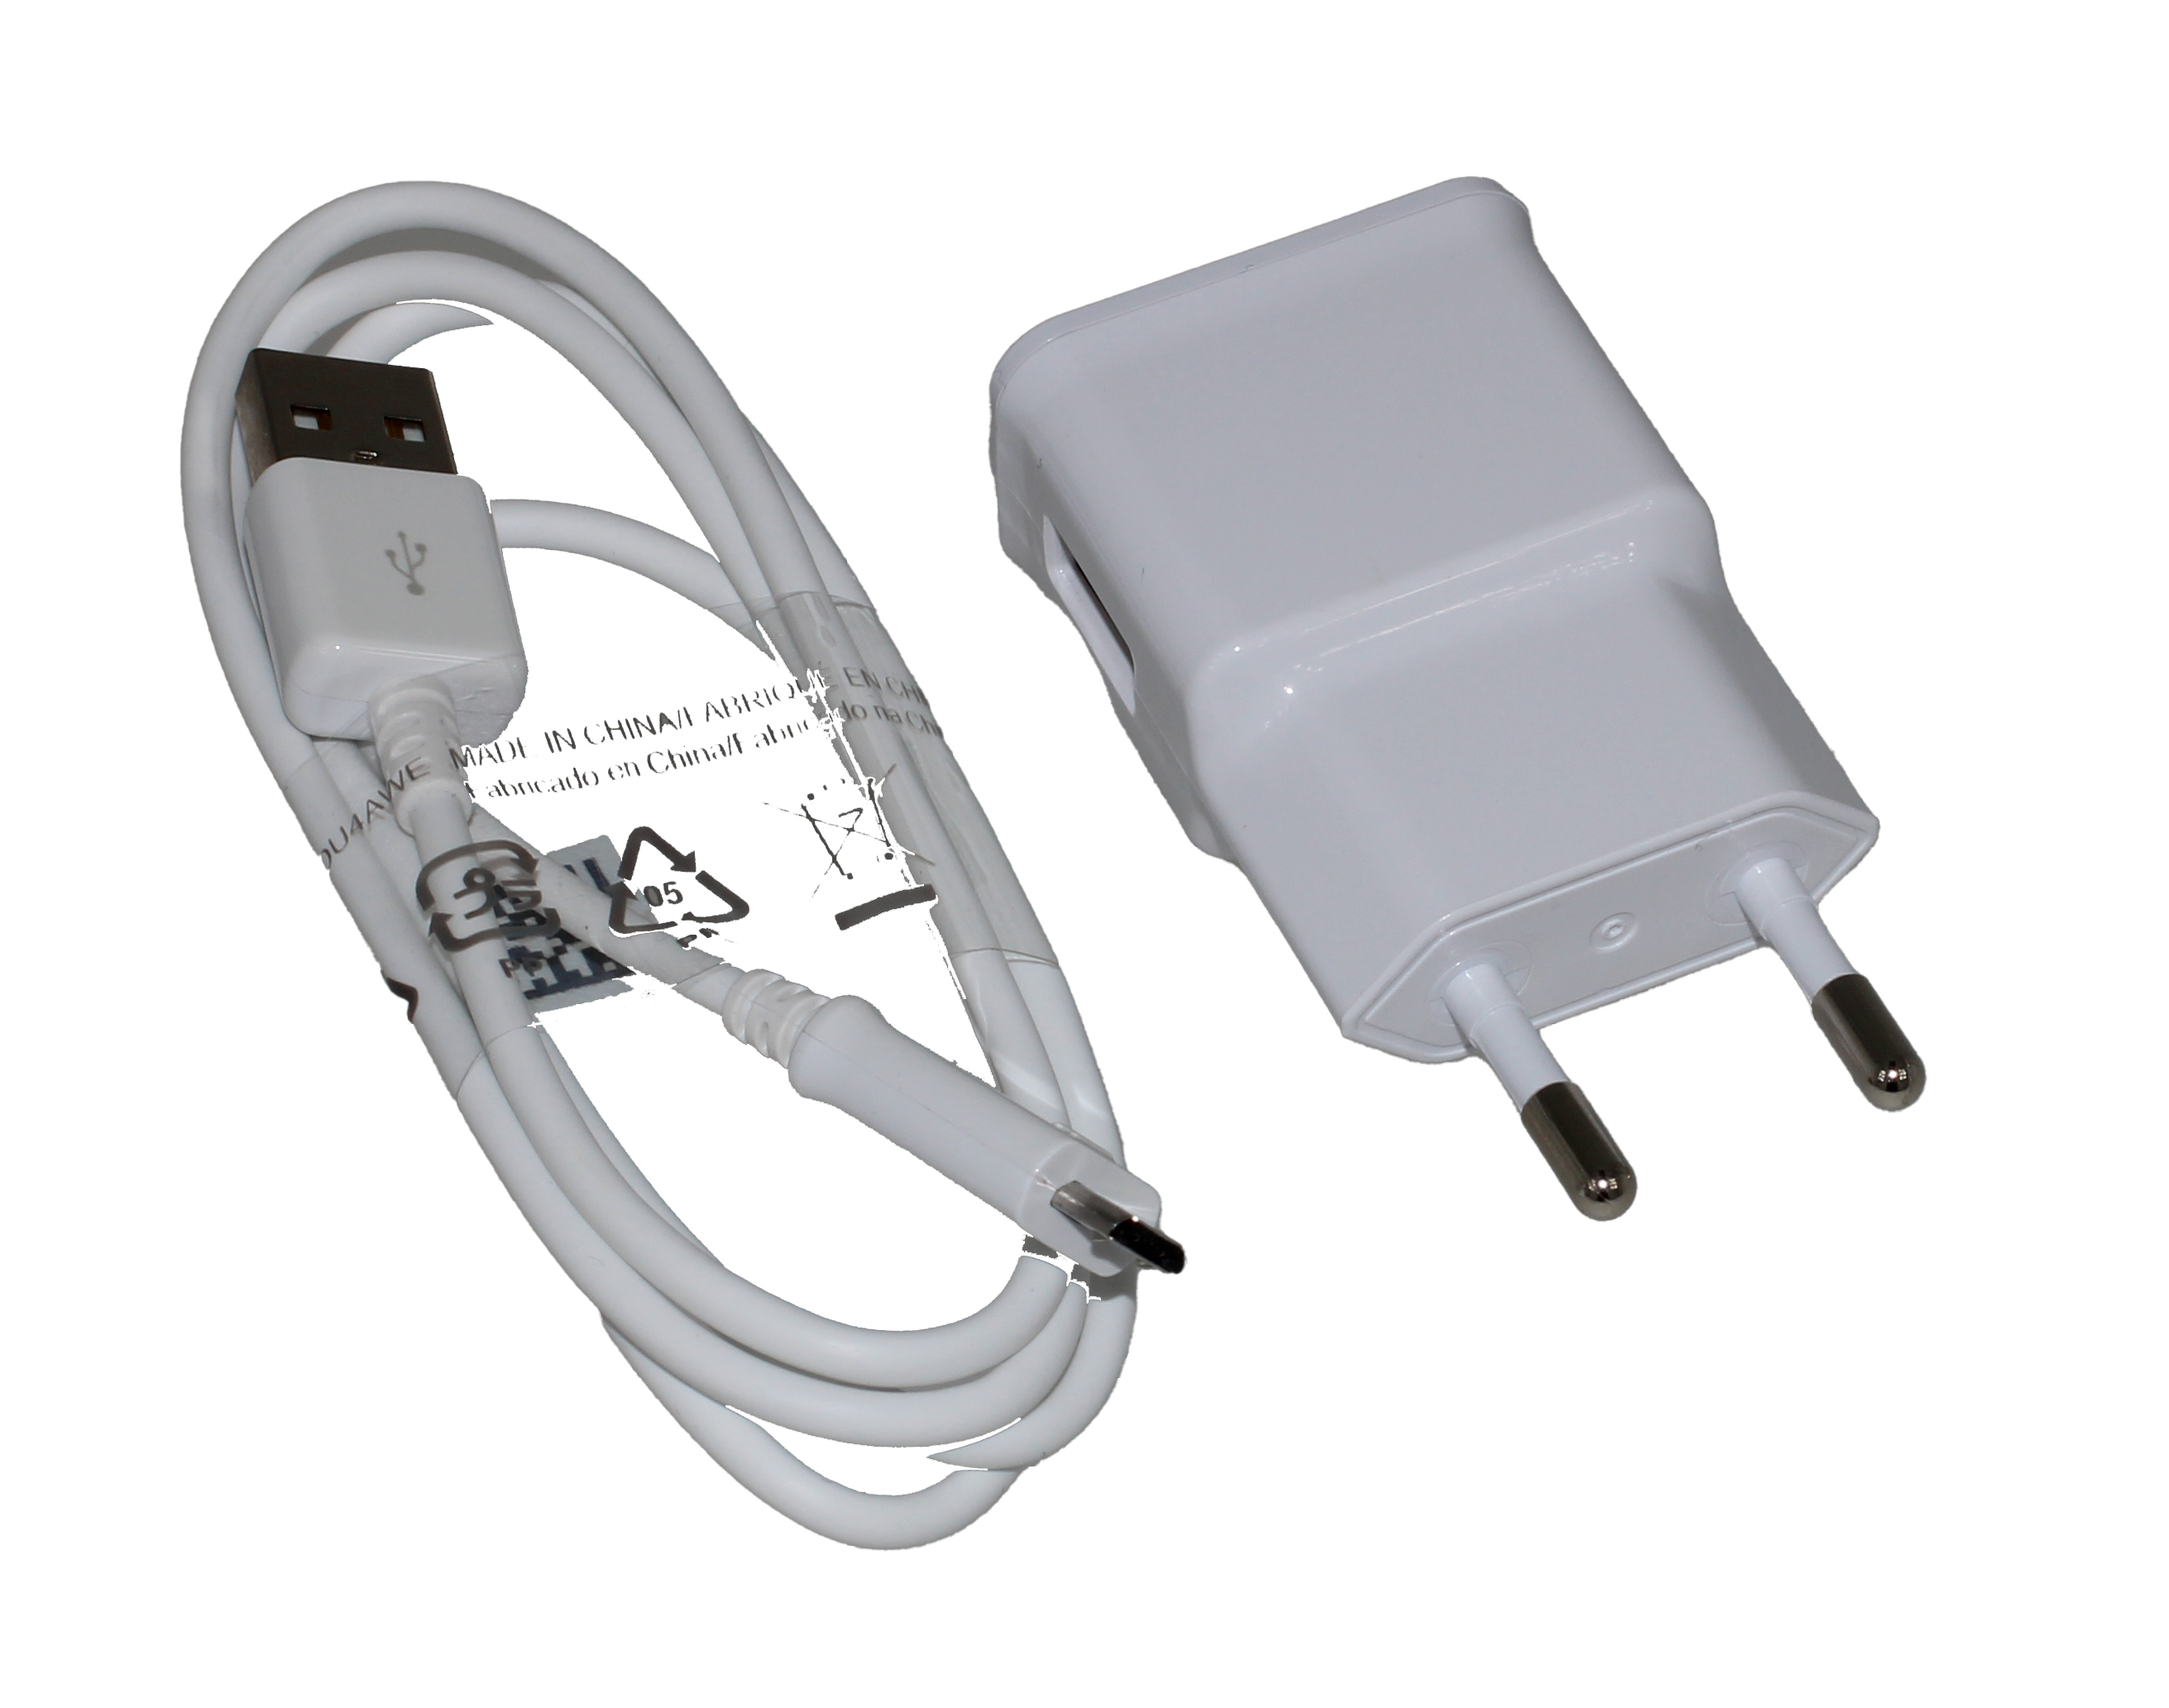 HighSpeed USB-C Ladekabel Datenkabel f. Handy Smartphone Auto Kfz Pkw  Ladegerät